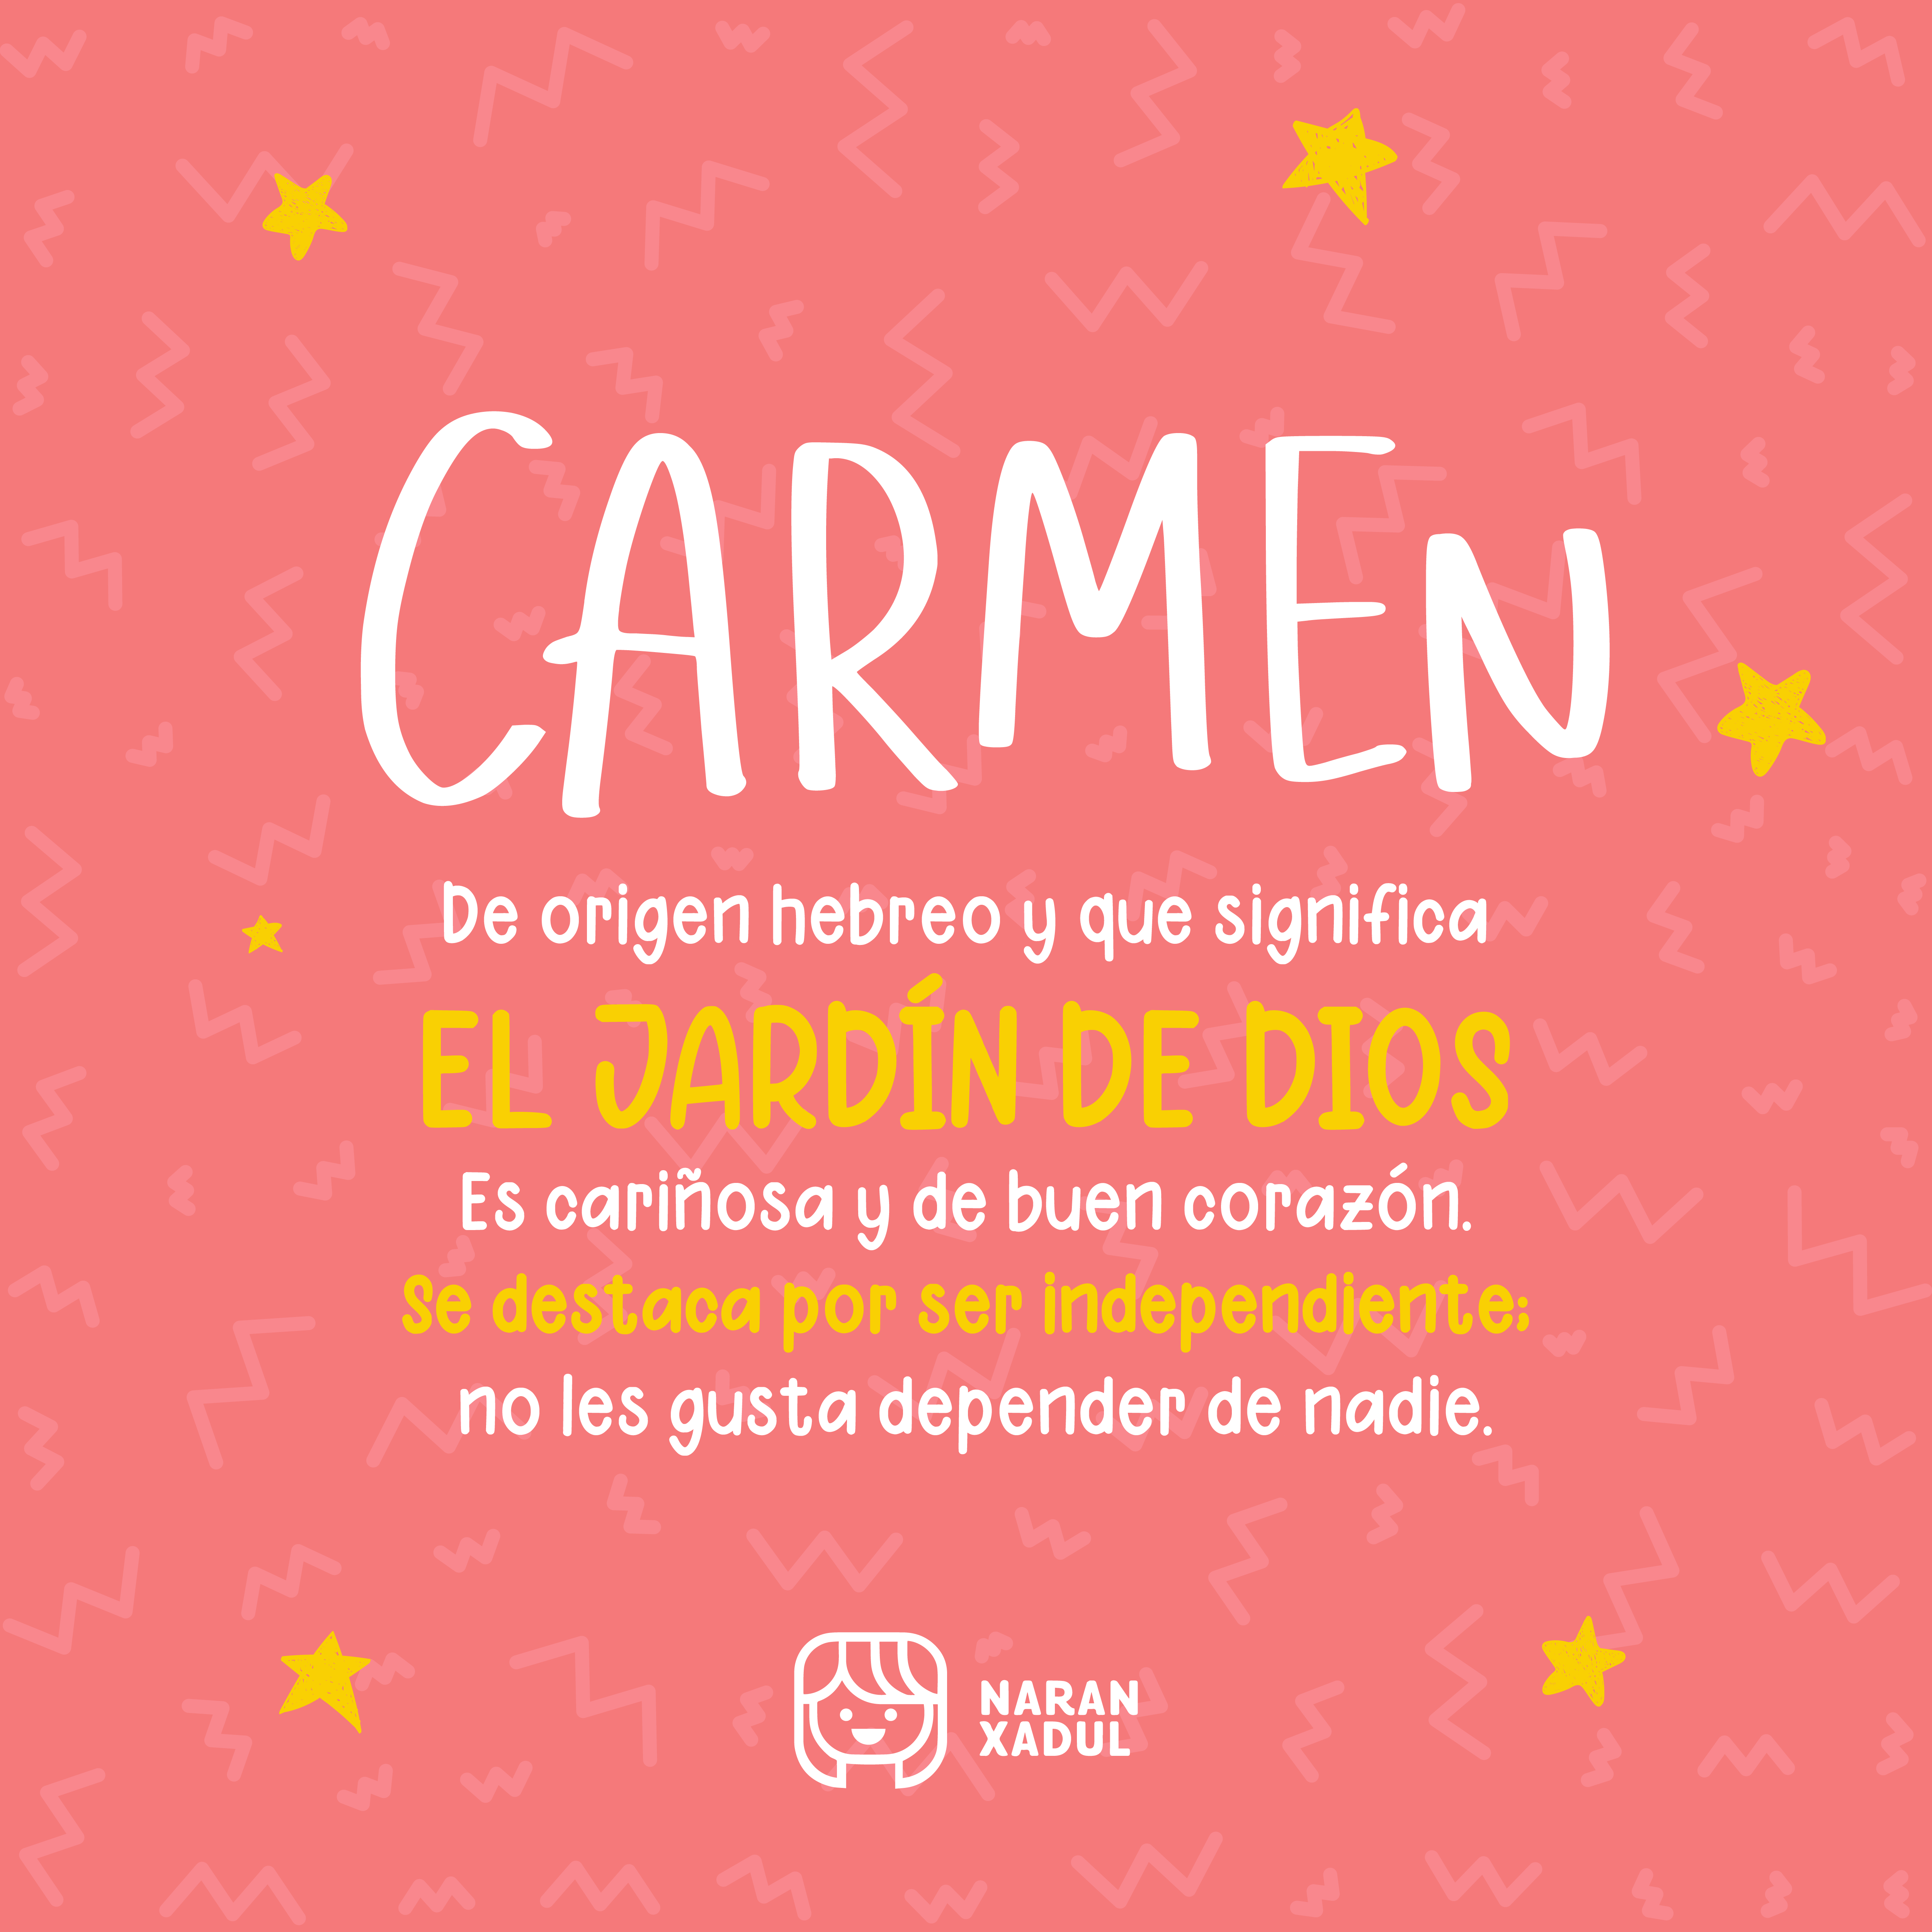 Significado de Carmen